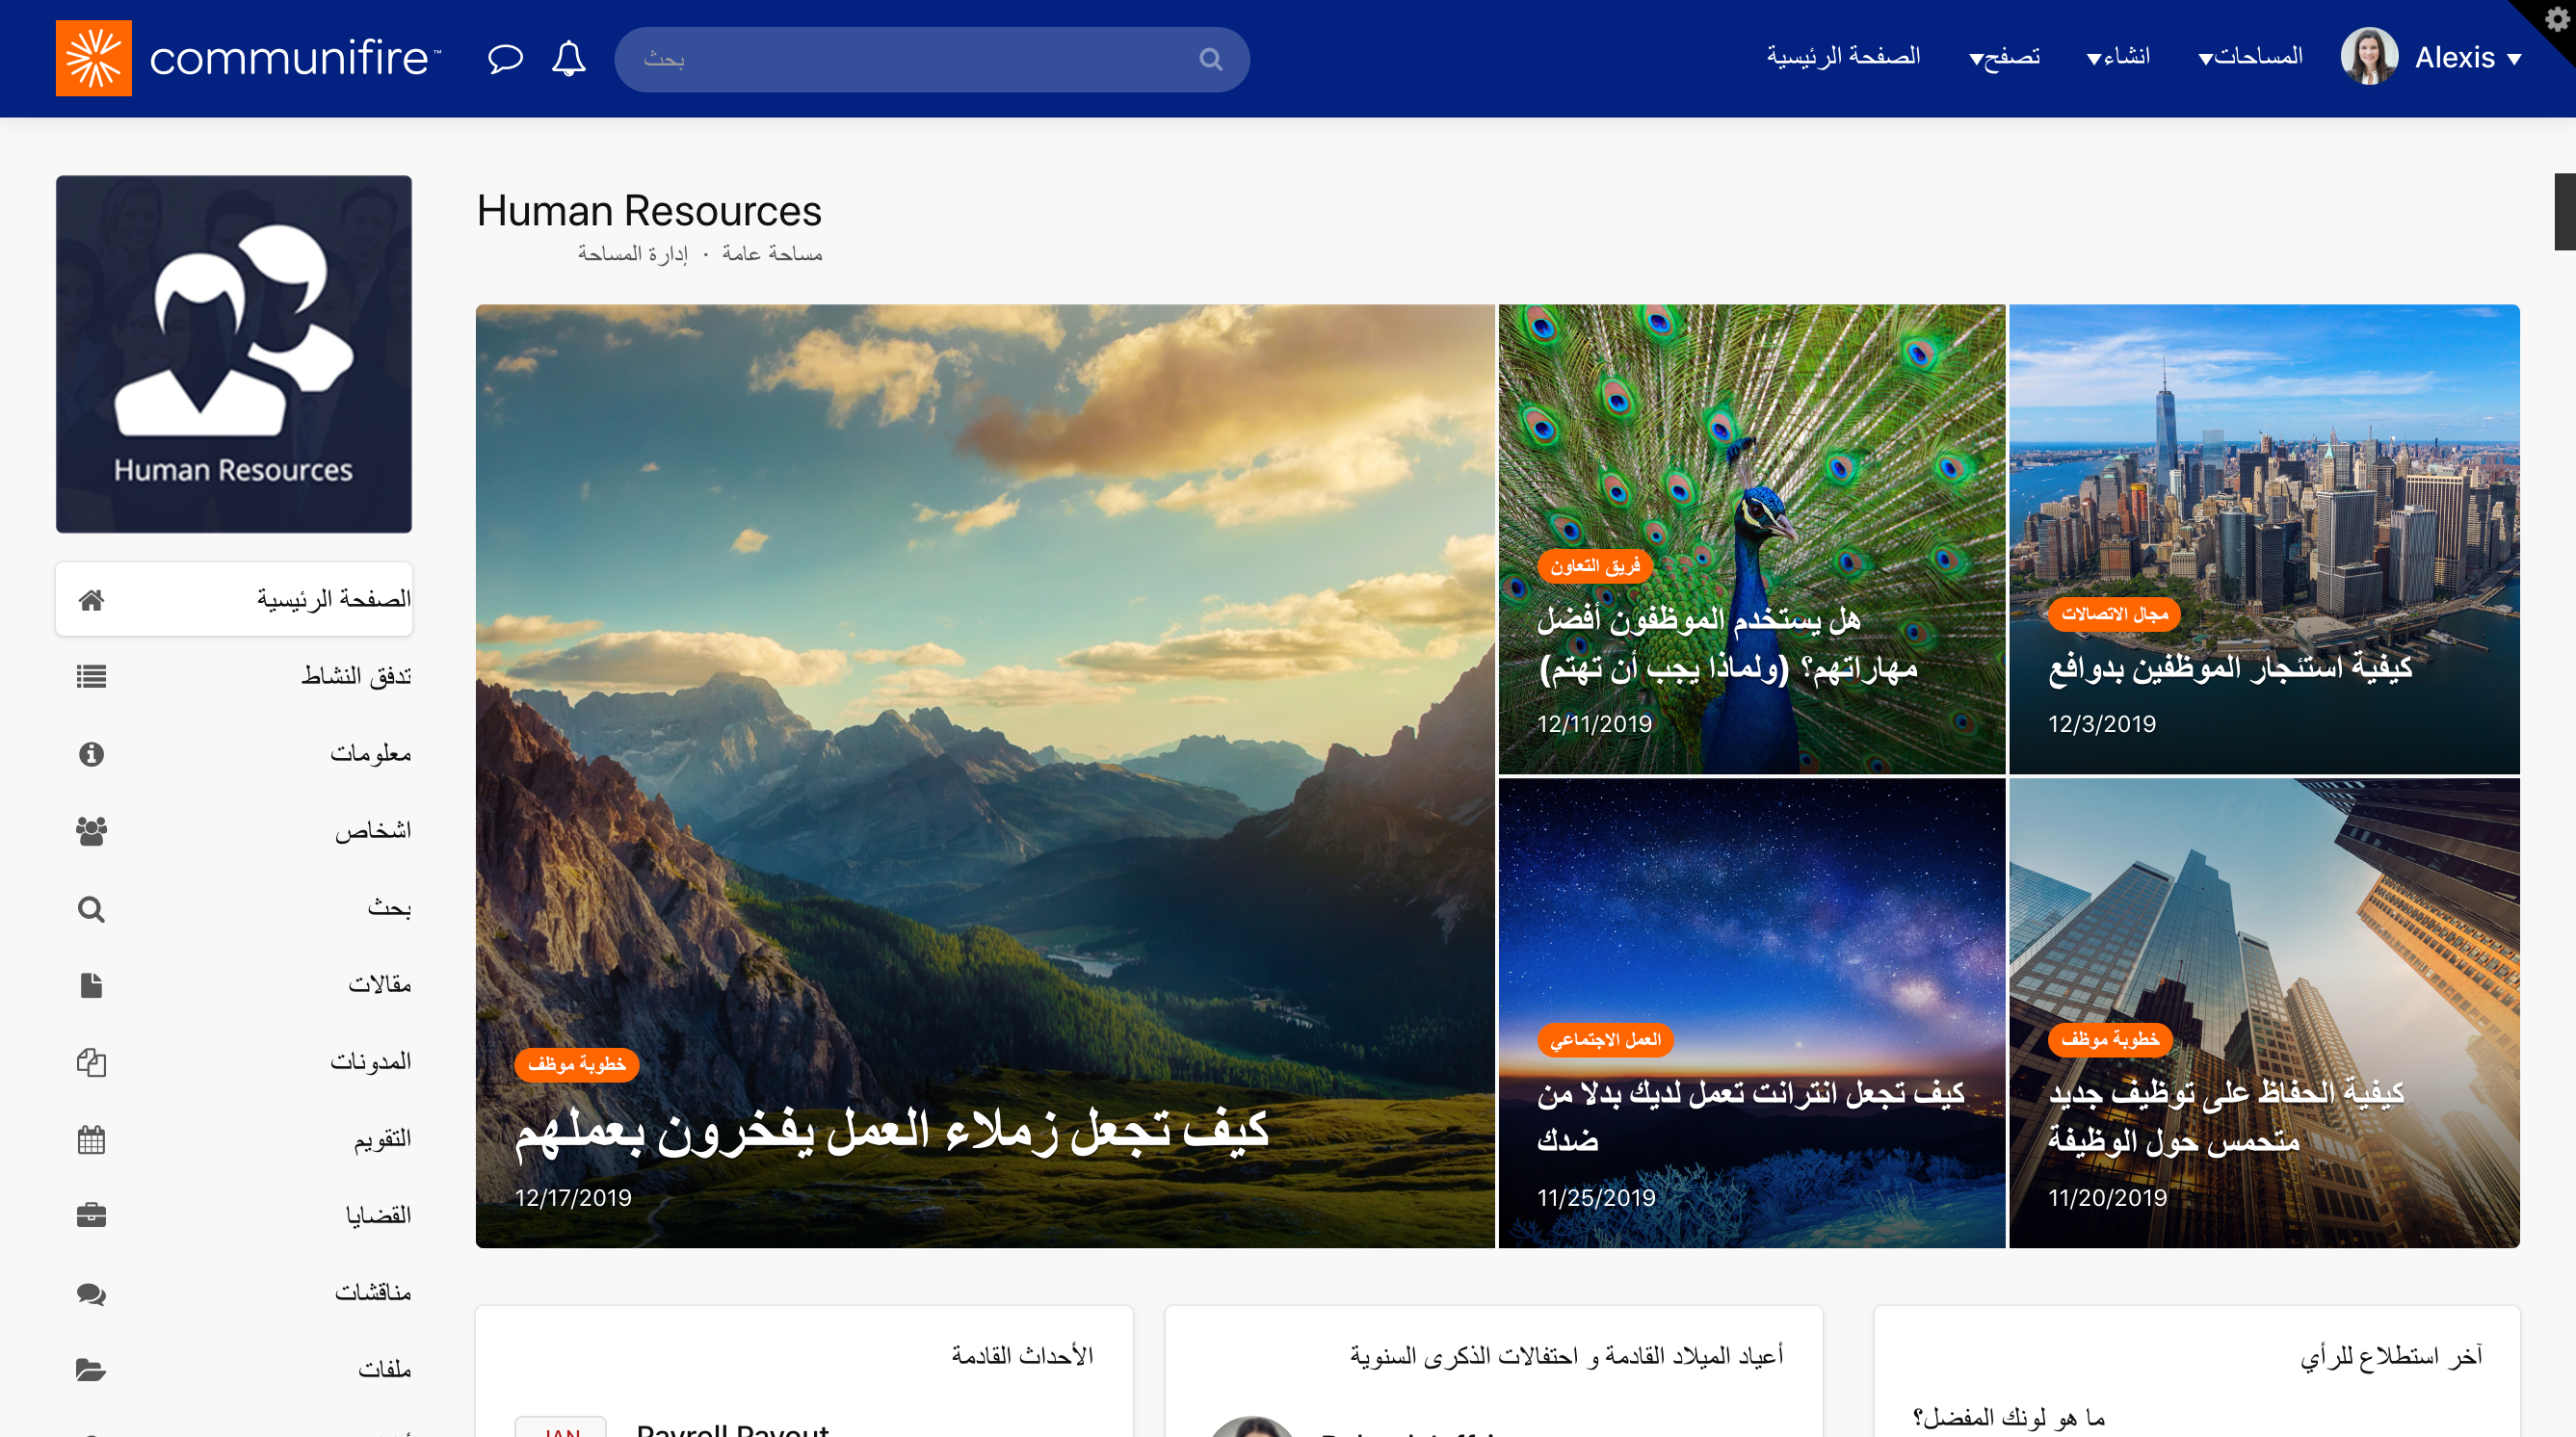 Communifire site in Arabic